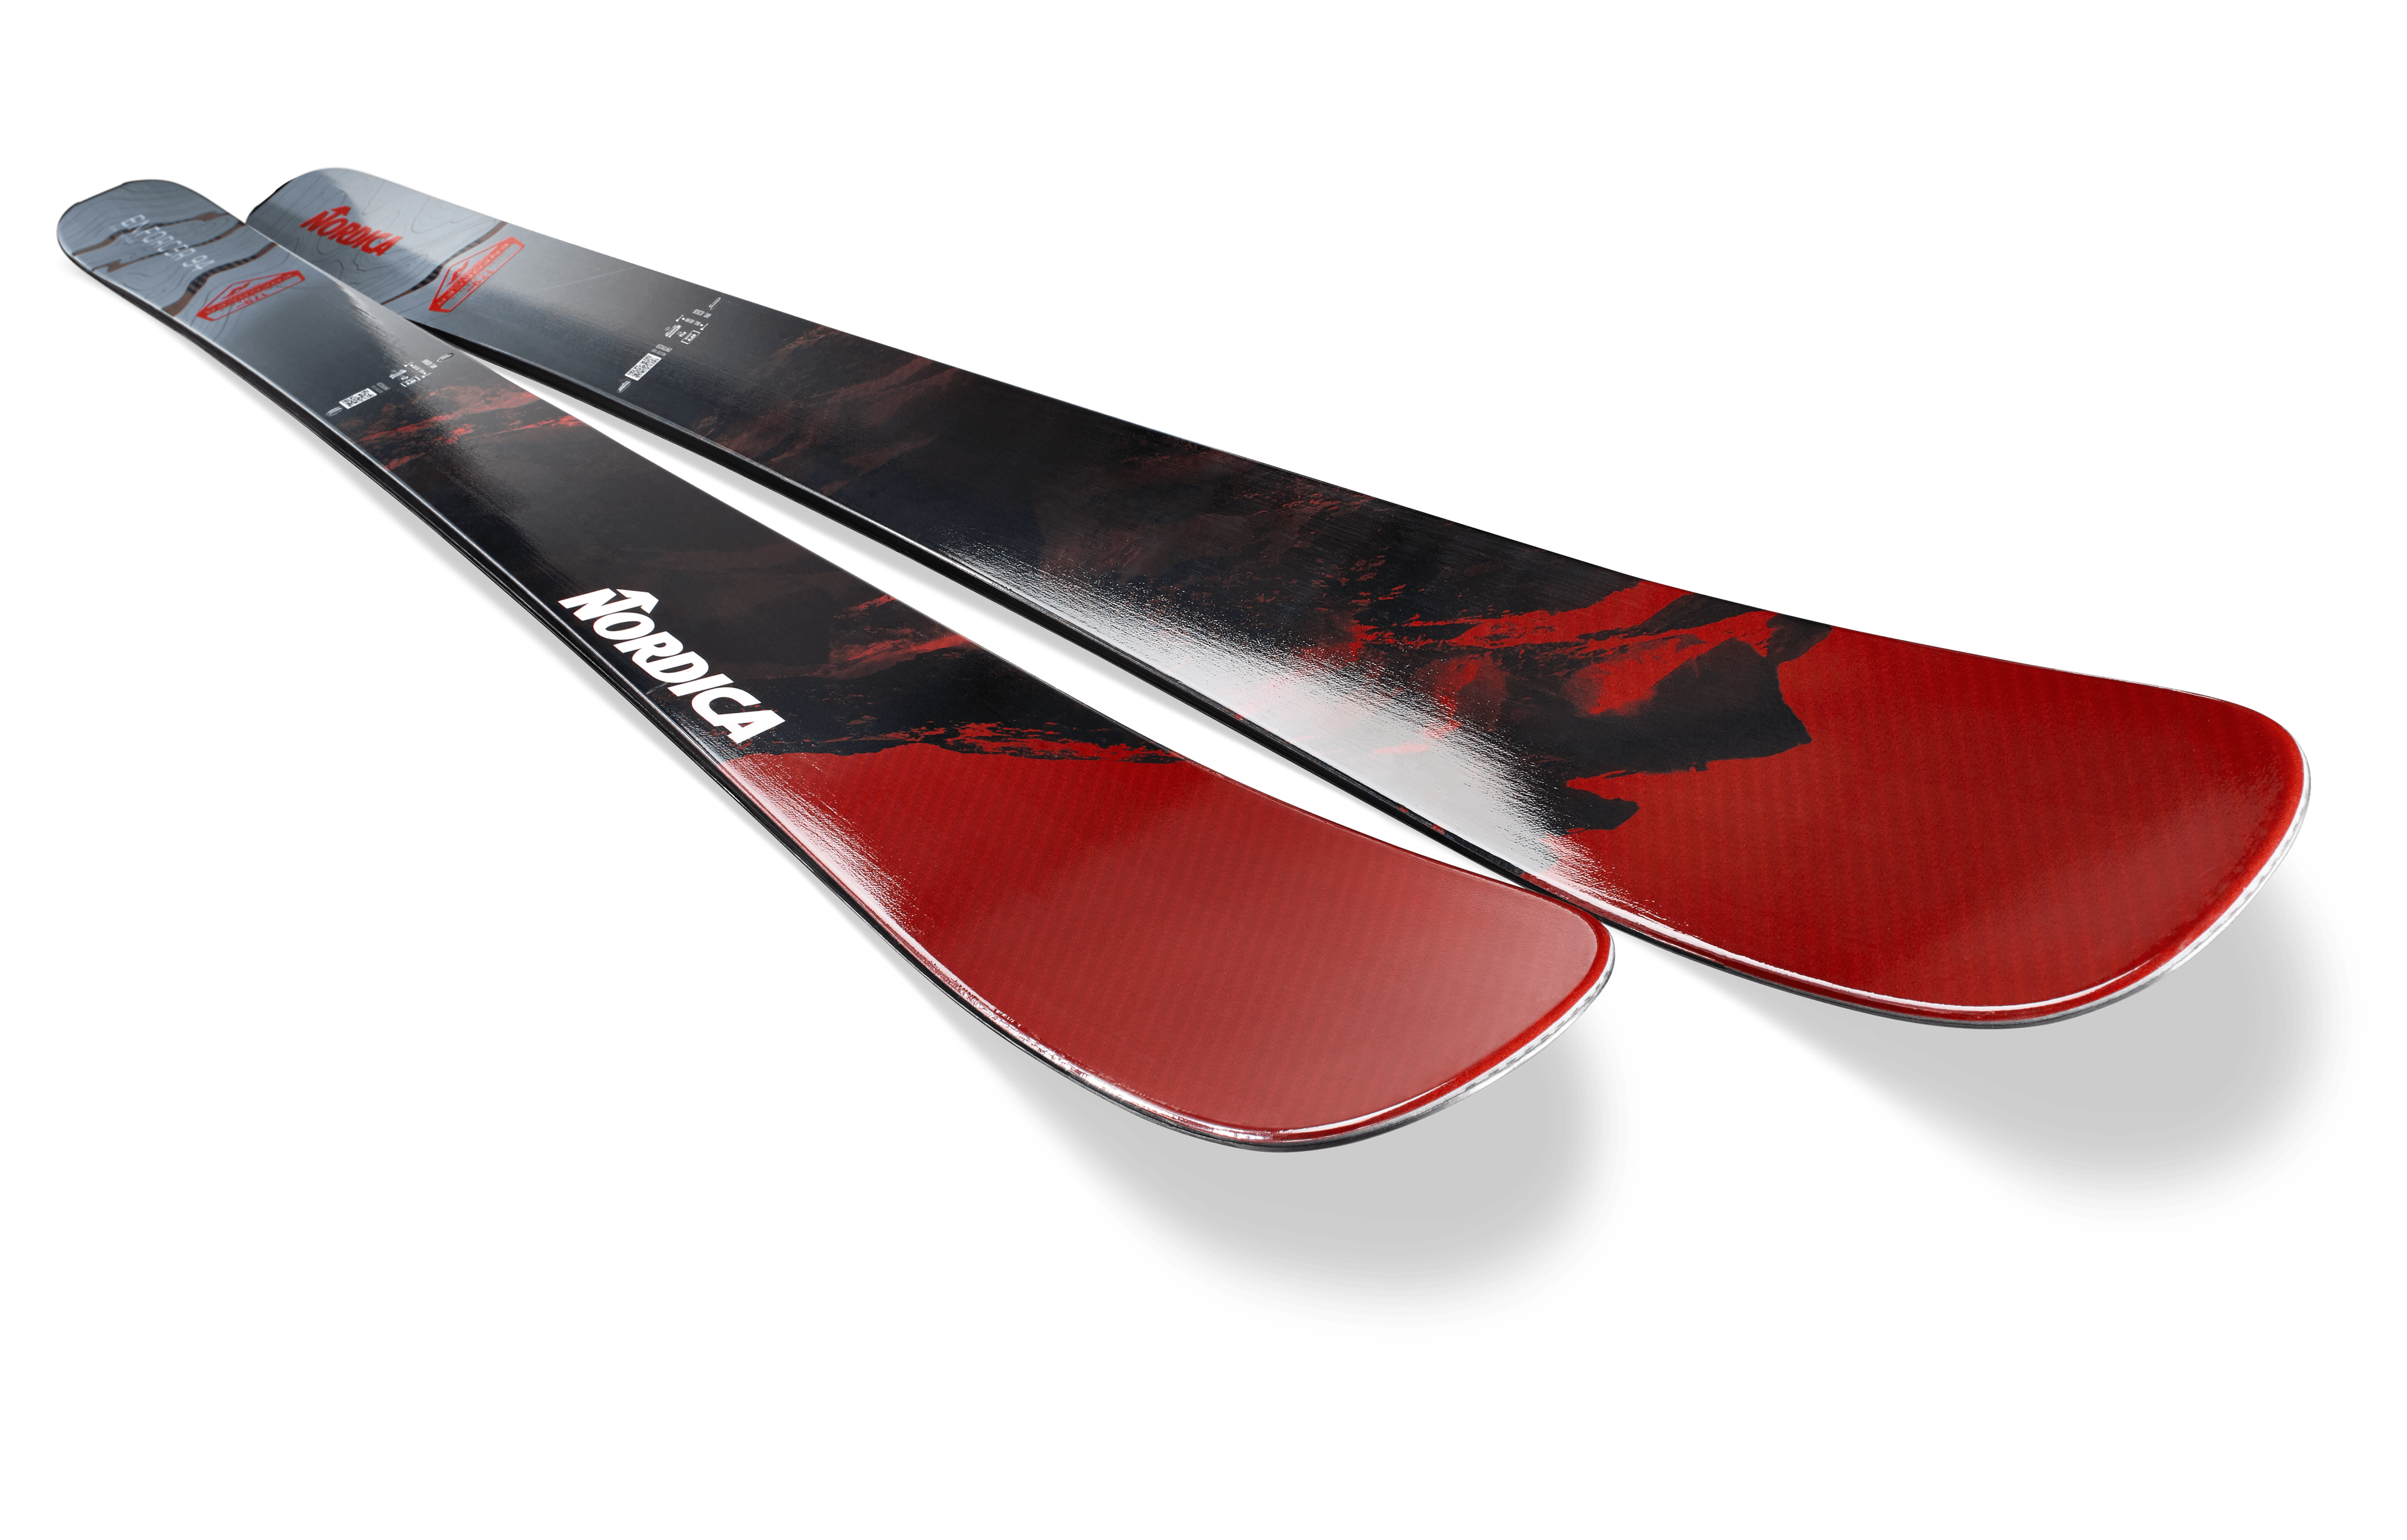 HOUSSE SKI RED – Housse et accessoire skis – Chullanka